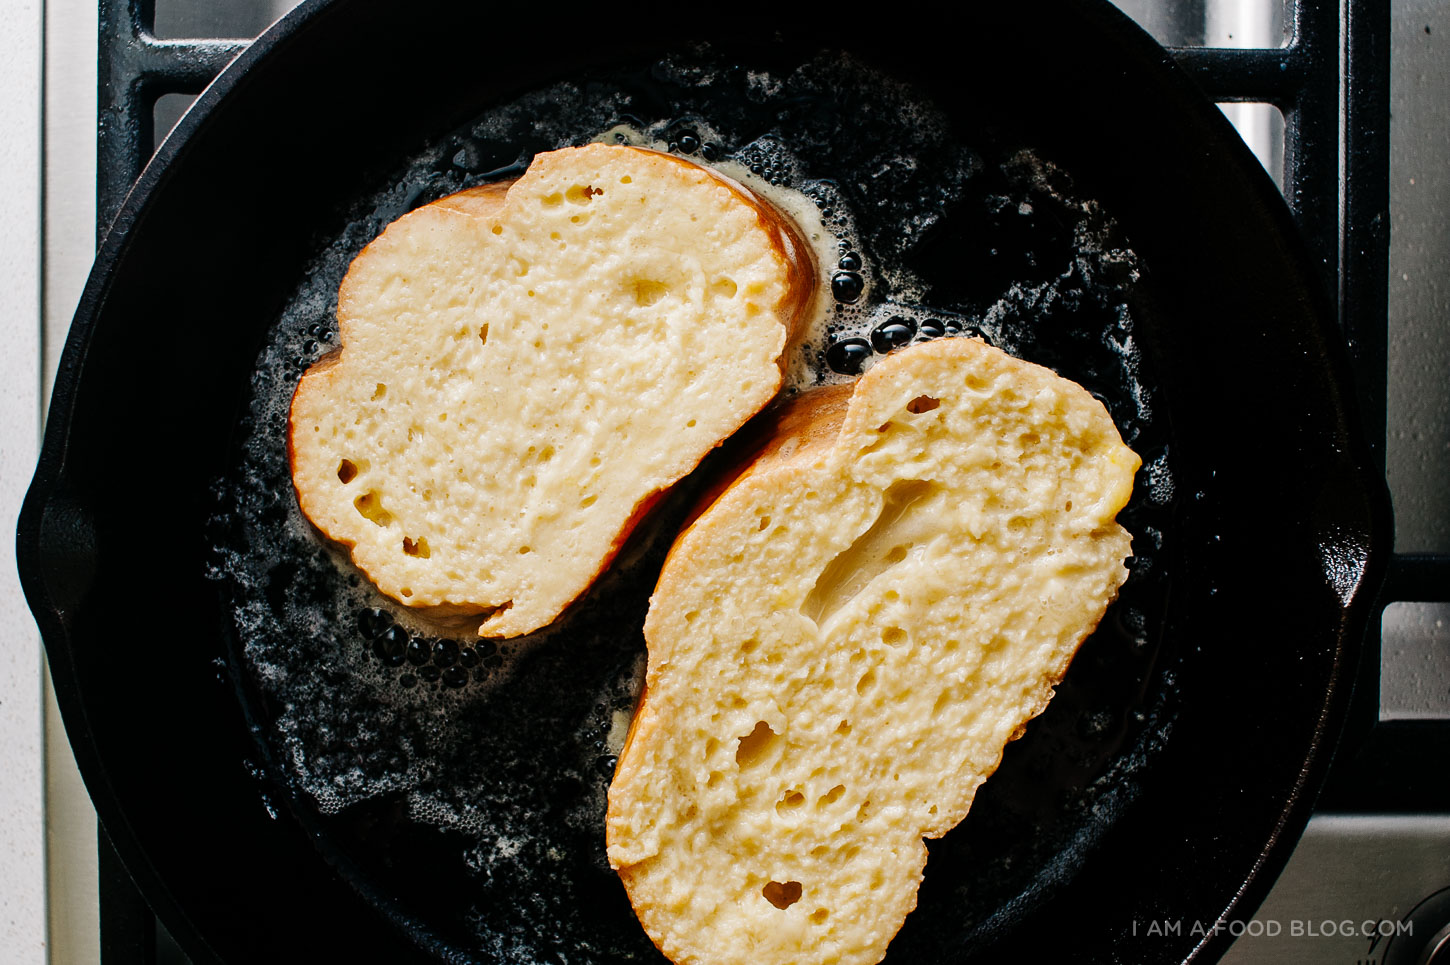 recette de pain perdu coco tres leches - www.iamafoodblog.com